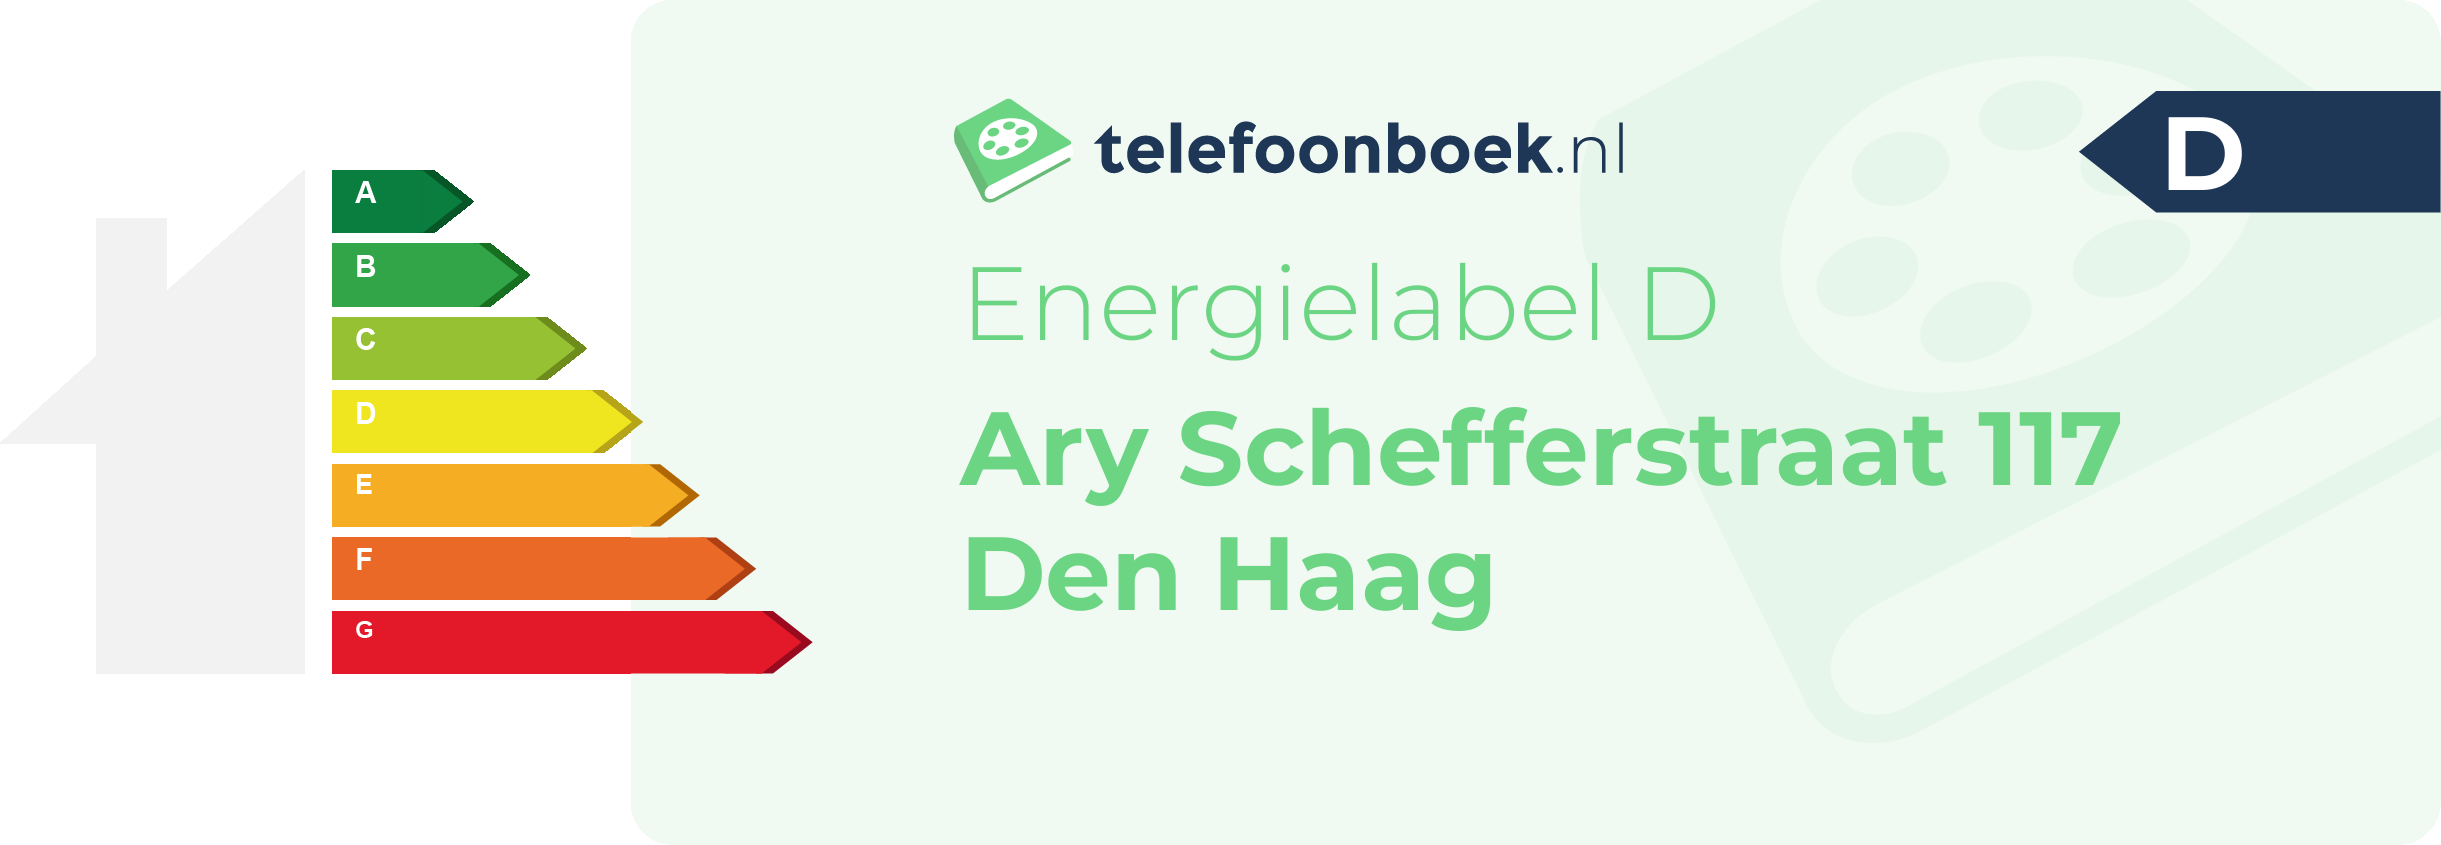 Energielabel Ary Schefferstraat 117 Den Haag